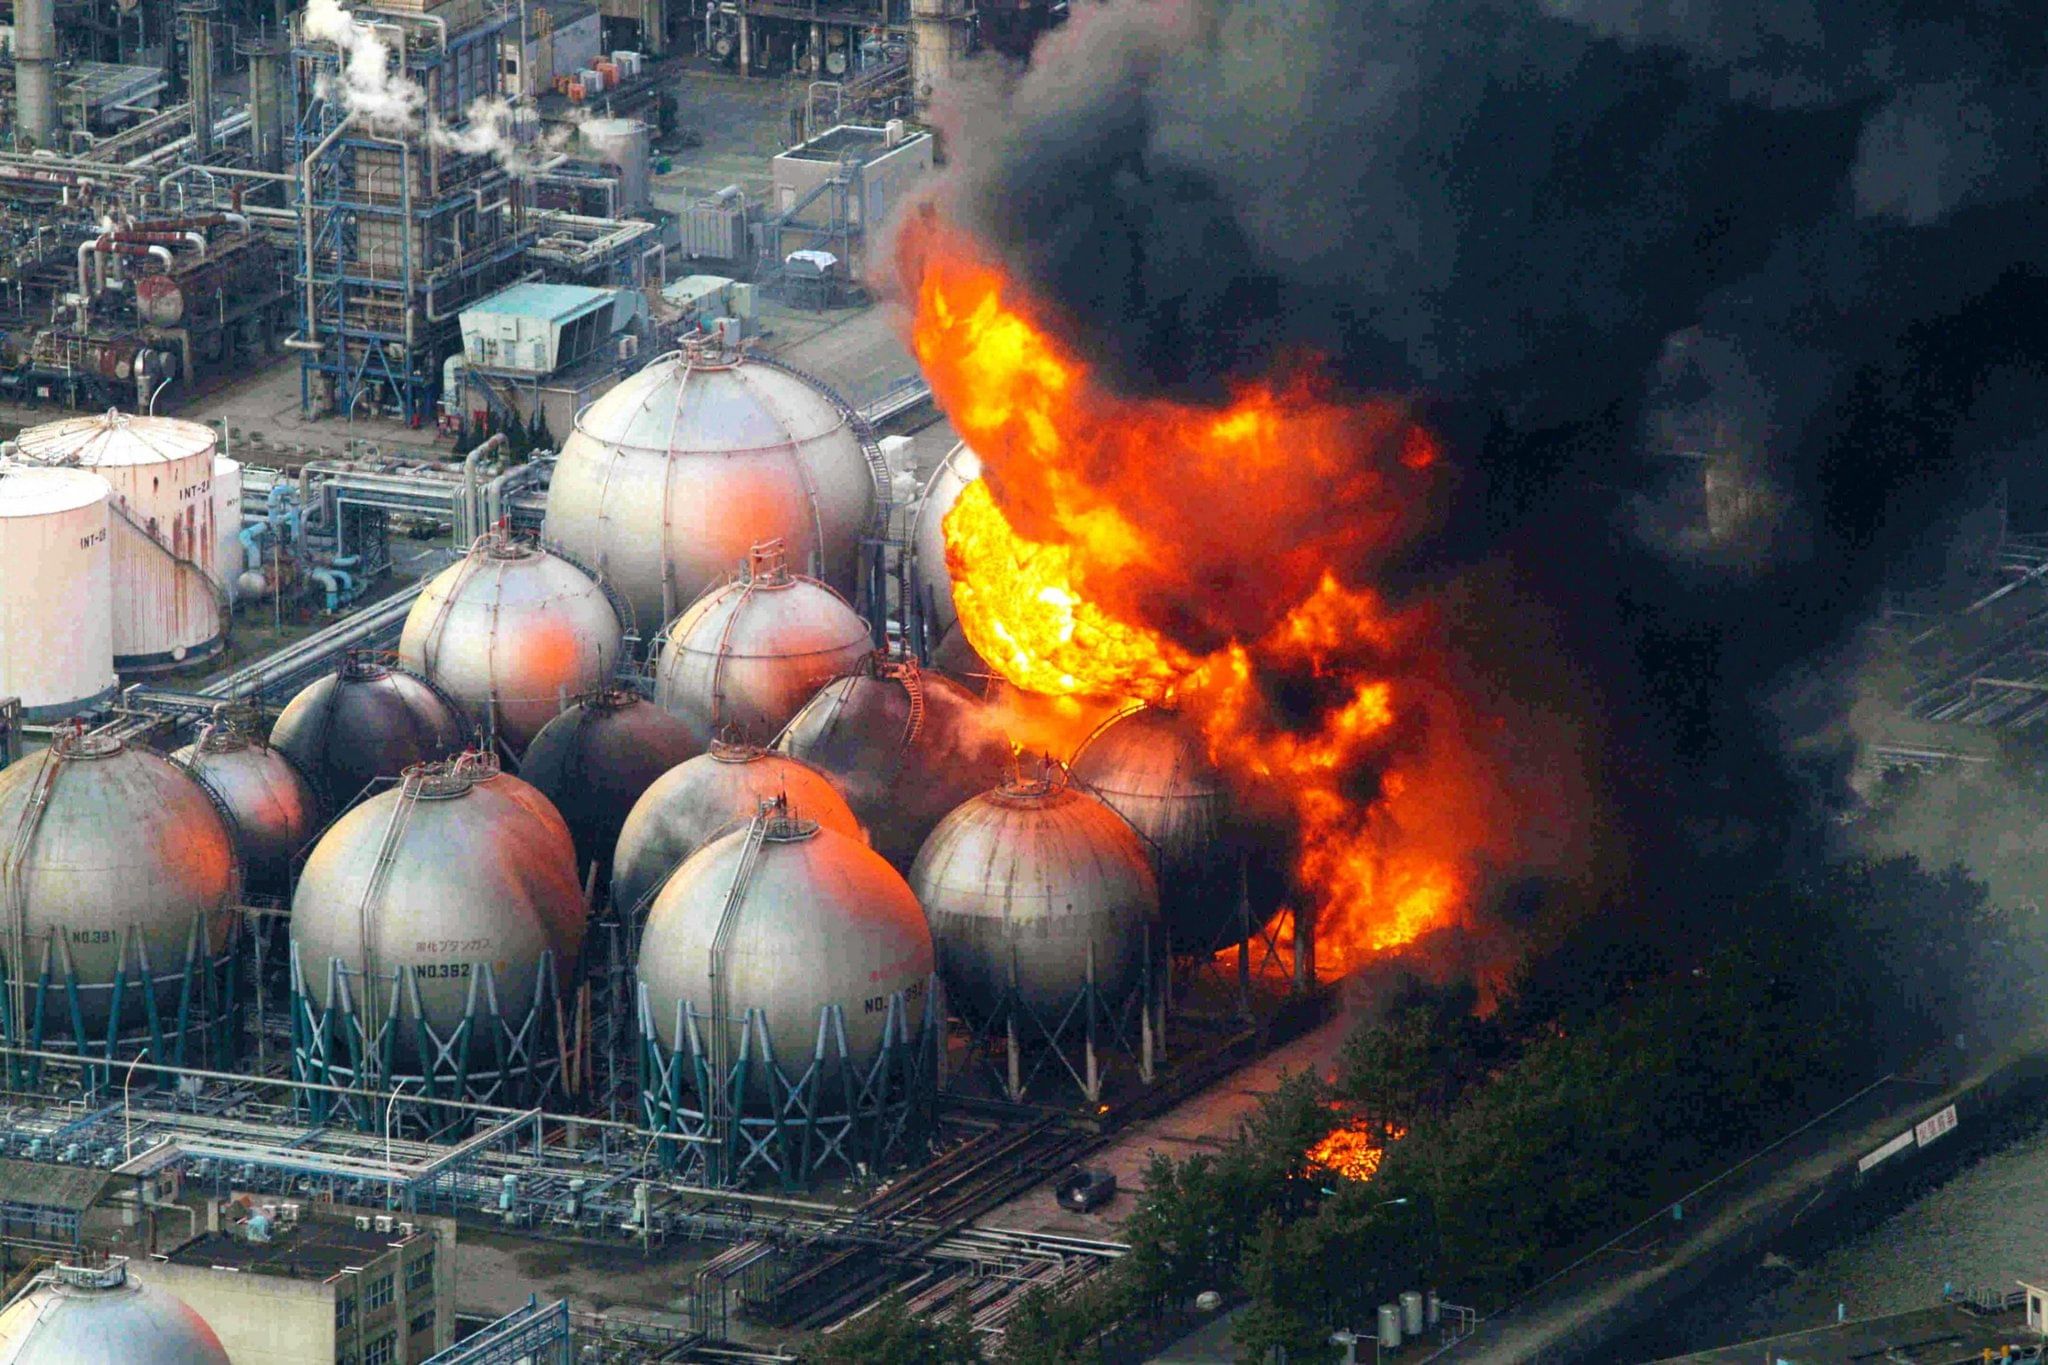 Ядерные аварии и катастрофы. Авария на АЭС Фукусима-1. Авария на АЭС Фукусима-1 (Япония, 2011).. Техногенные катастрофы Фукусима-1 авария АЭС. Авария на АЭС Фукусима-1 взрыв 1 реактора.